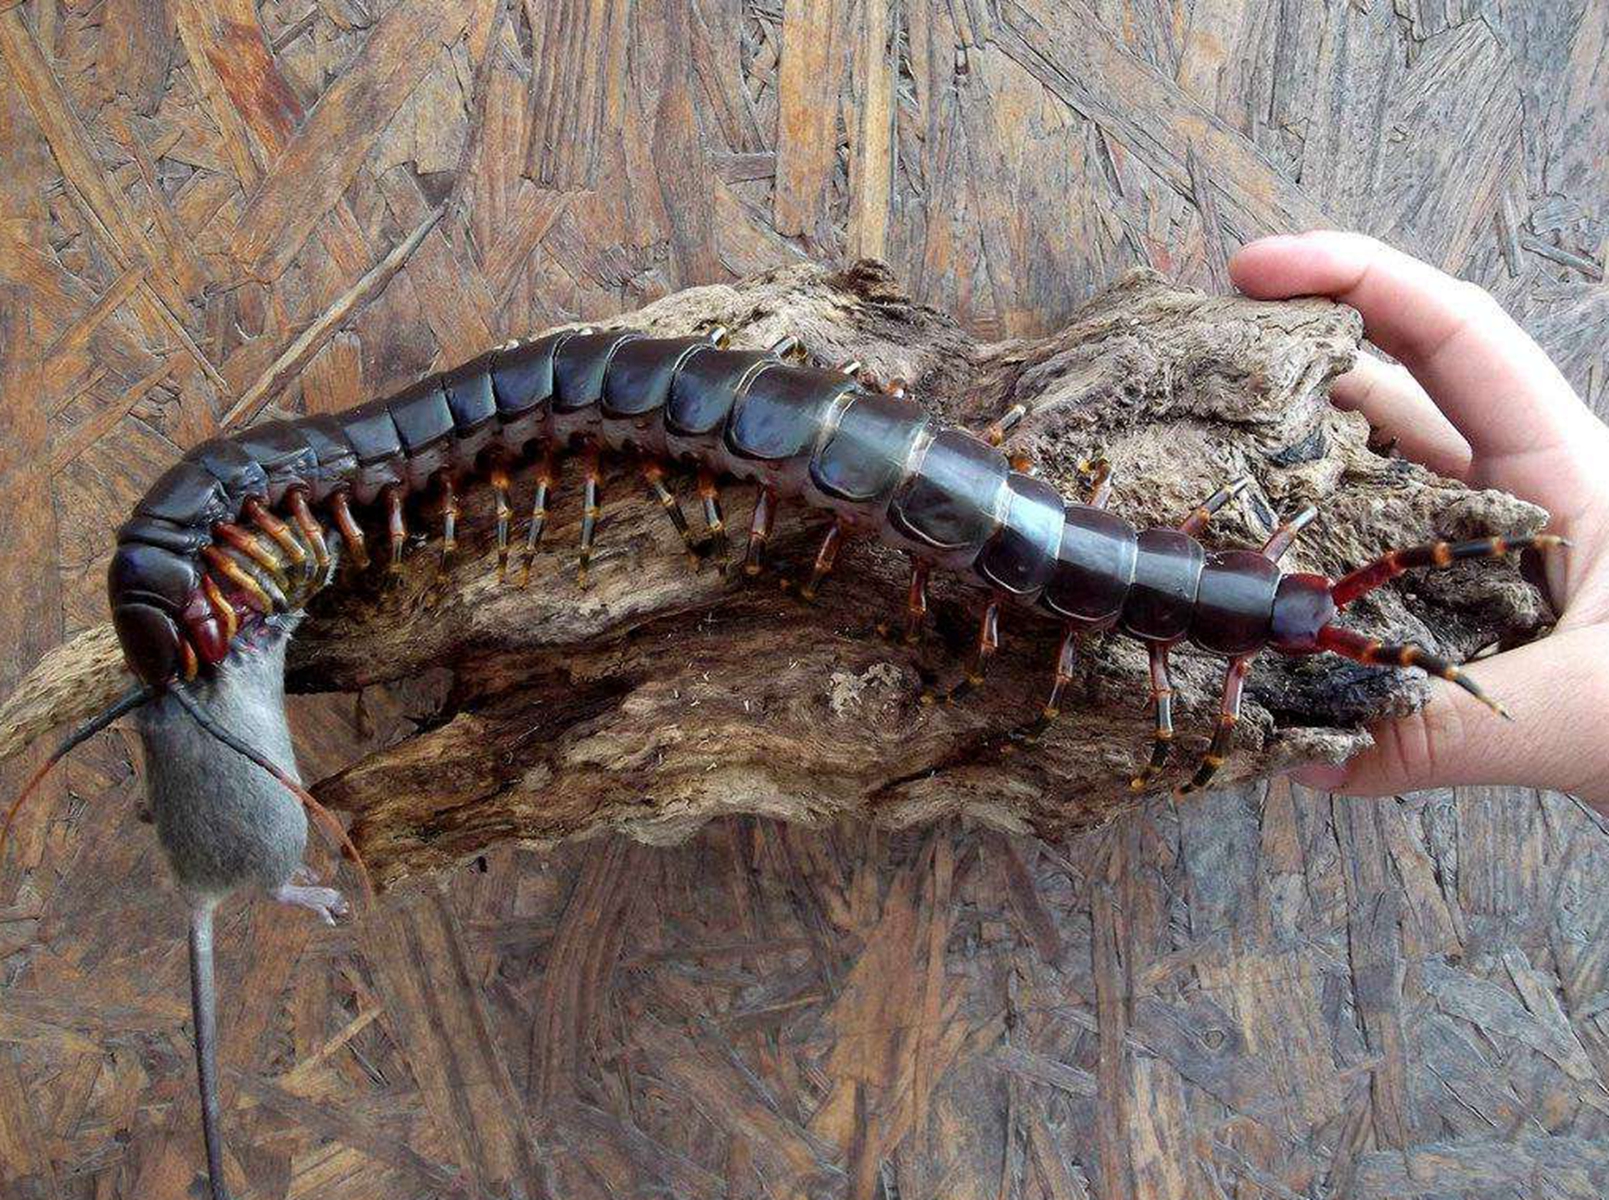 世界最大蜈蚣:长62厘米,一般人躲得远远的,爬虫爱好者却当宠物